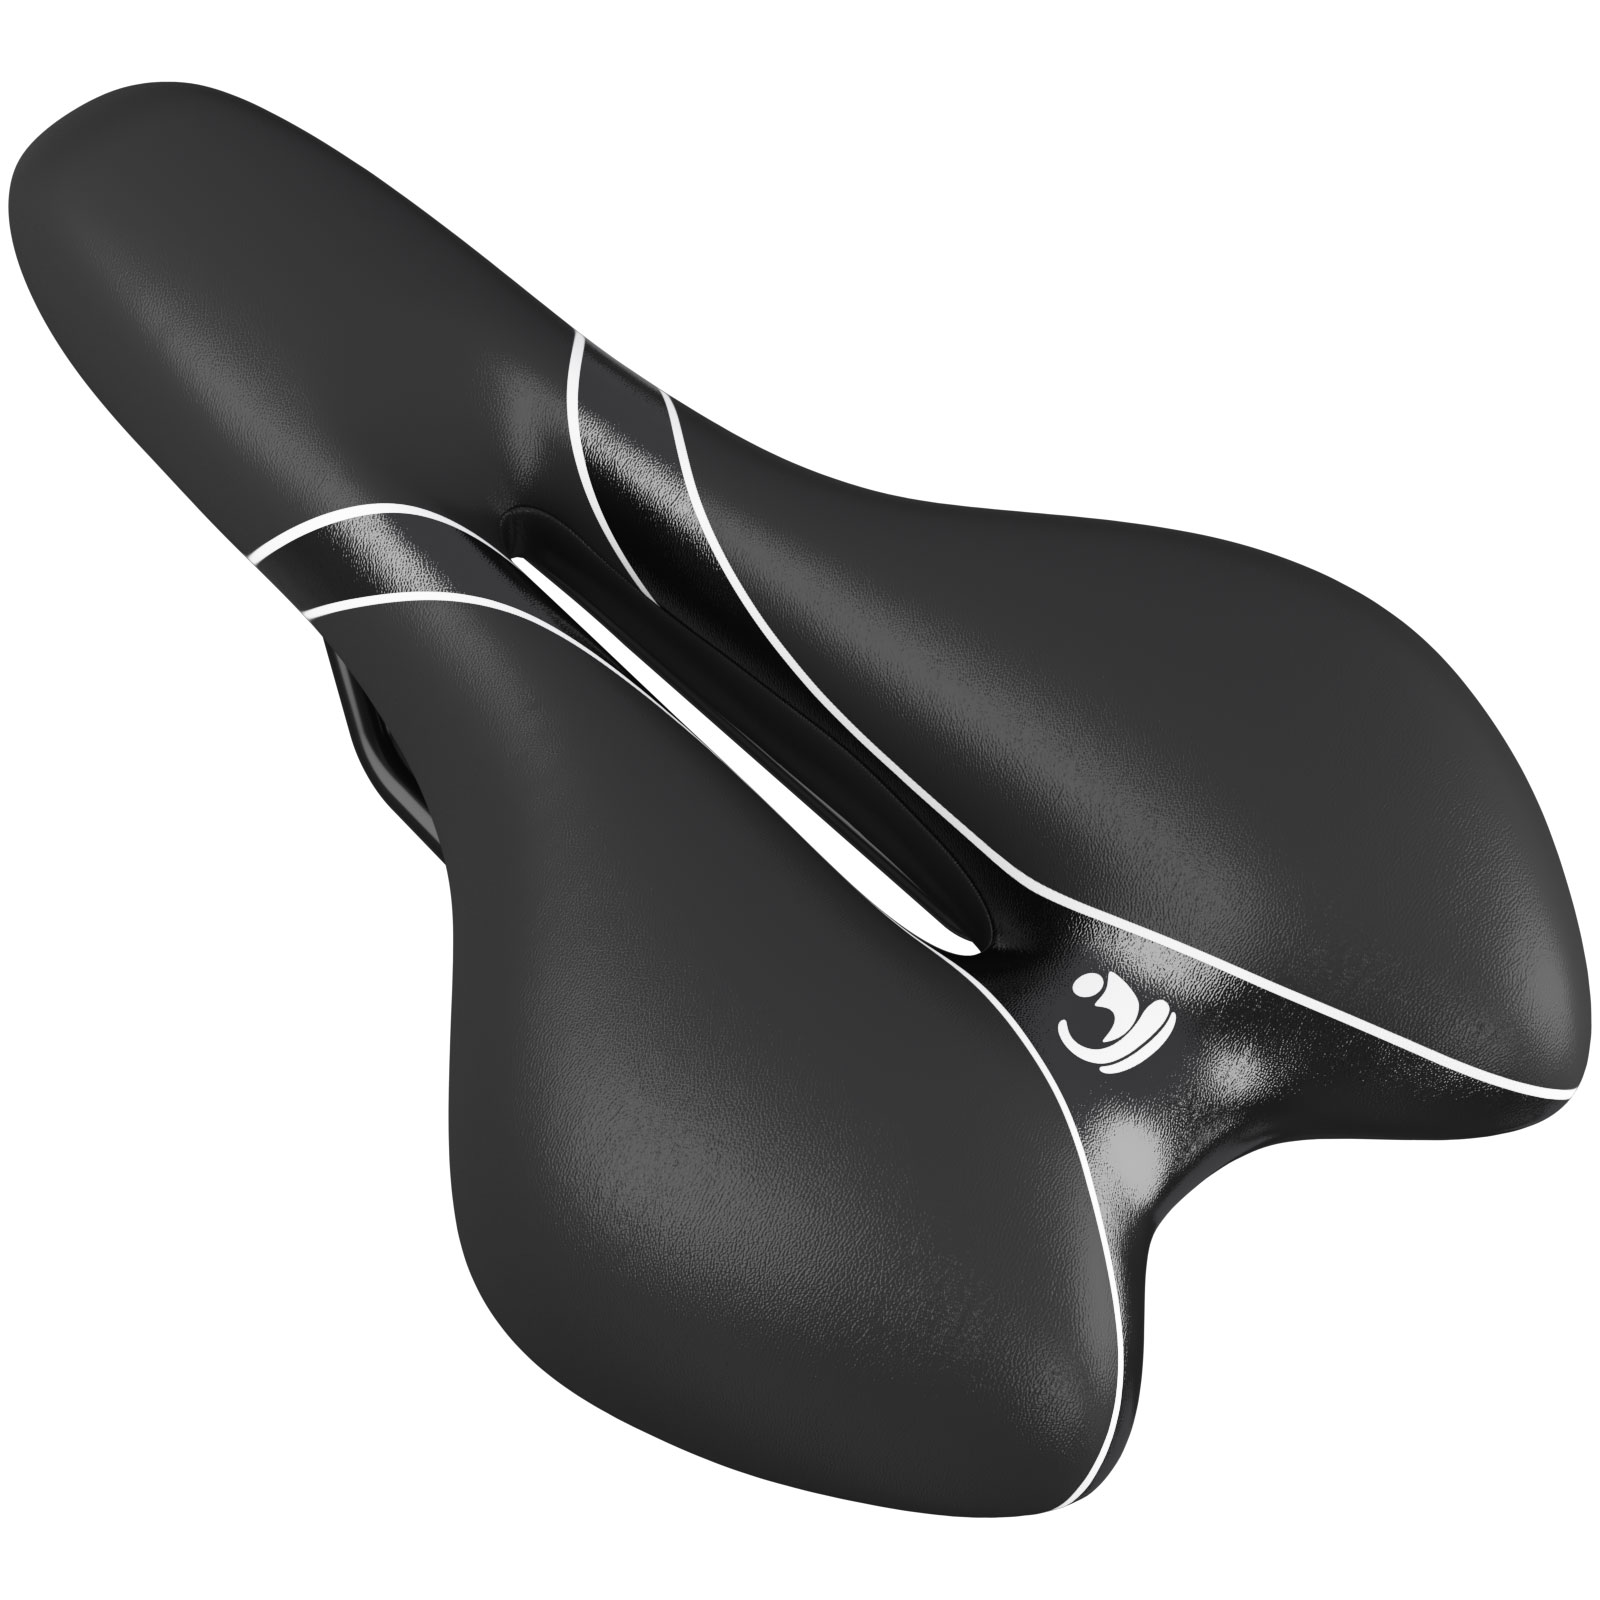 WELLGRO Sportsattel schwarz - Rennradsattel - ca. 28x16x8 cm (LxBxH) -  Fahrradsitz für Mountainbike - Trekkingrad - Fahrradsattel gepolstert |  Wellgro Import